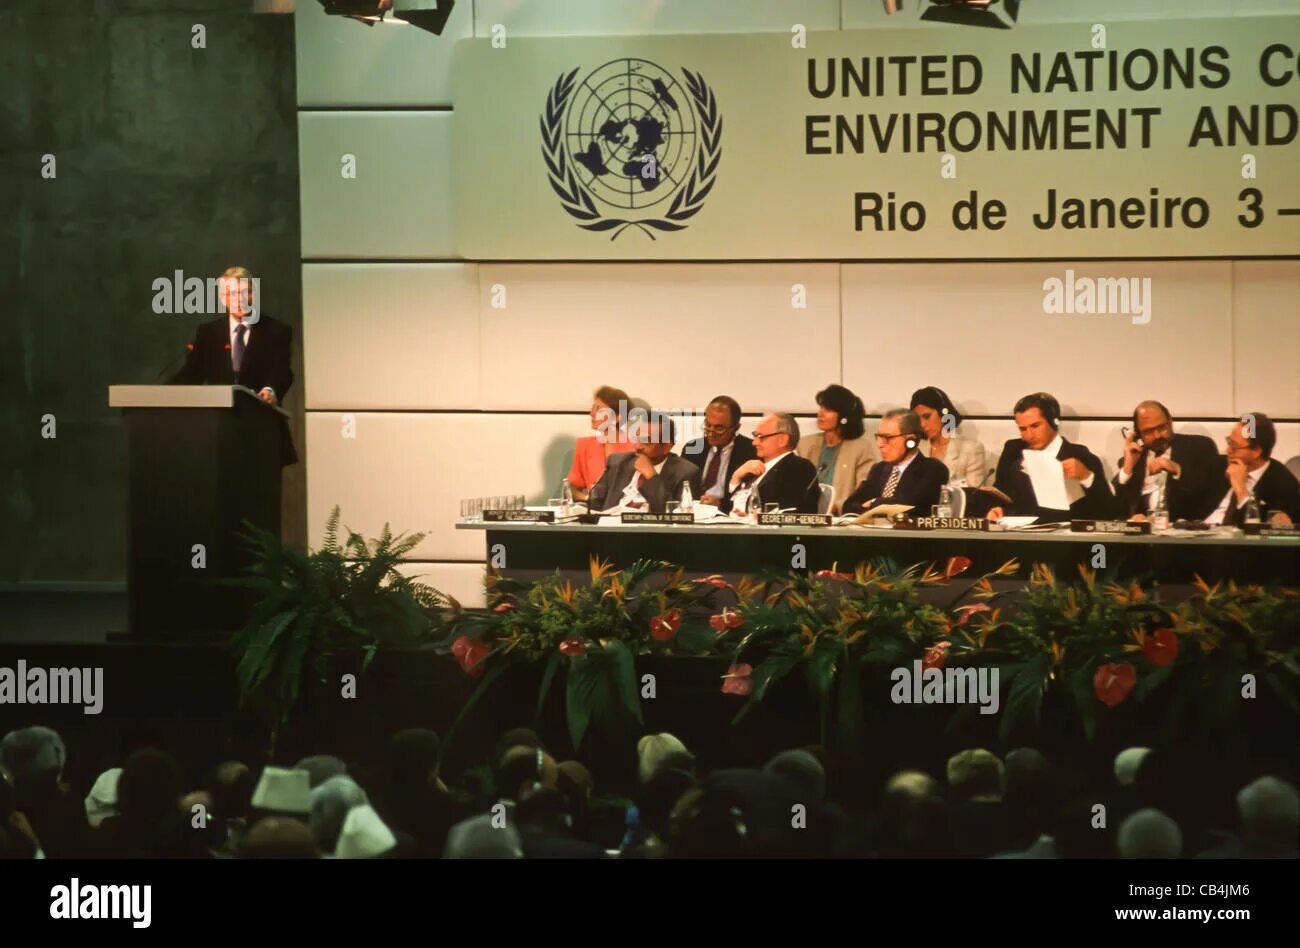 Международная конференция оон. Конференция ООН В Рио де Жанейро 1992. Конференция ООН по окружающей среде и развитию в Рио-де-Жанейро. Конференции ООН по окружающей среде в Рио-де-Жанейро (1992 г.)». Саммит в Рио де Жанейро 1992.